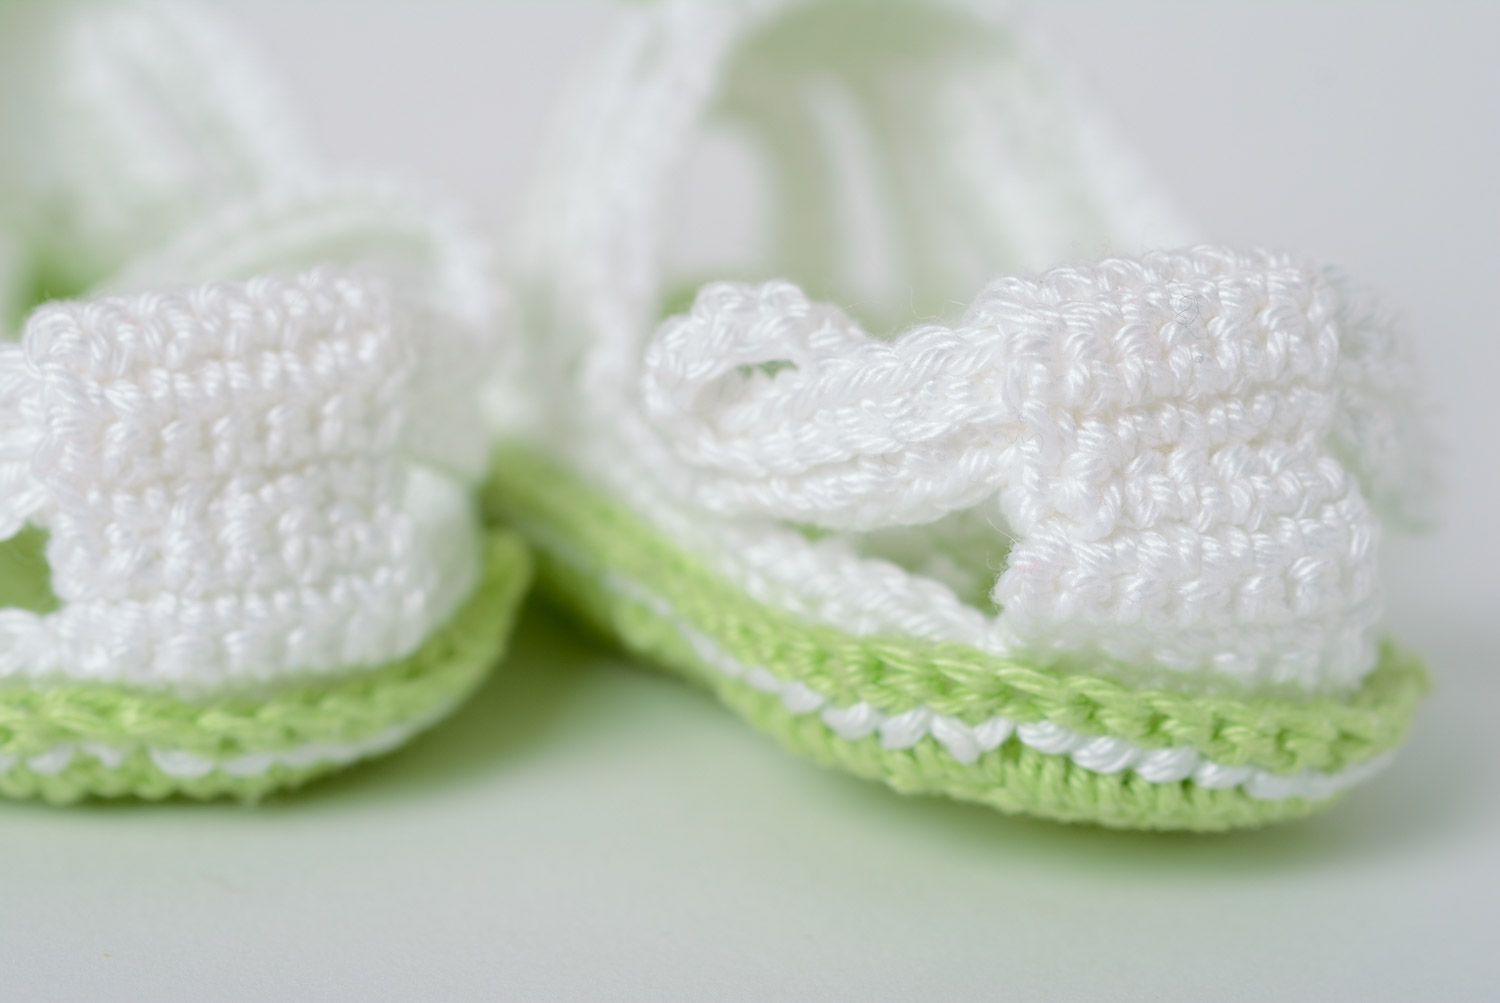 Chaussons de bébé tricotés au crochet blanc-vert faits main en forme de sandales photo 4